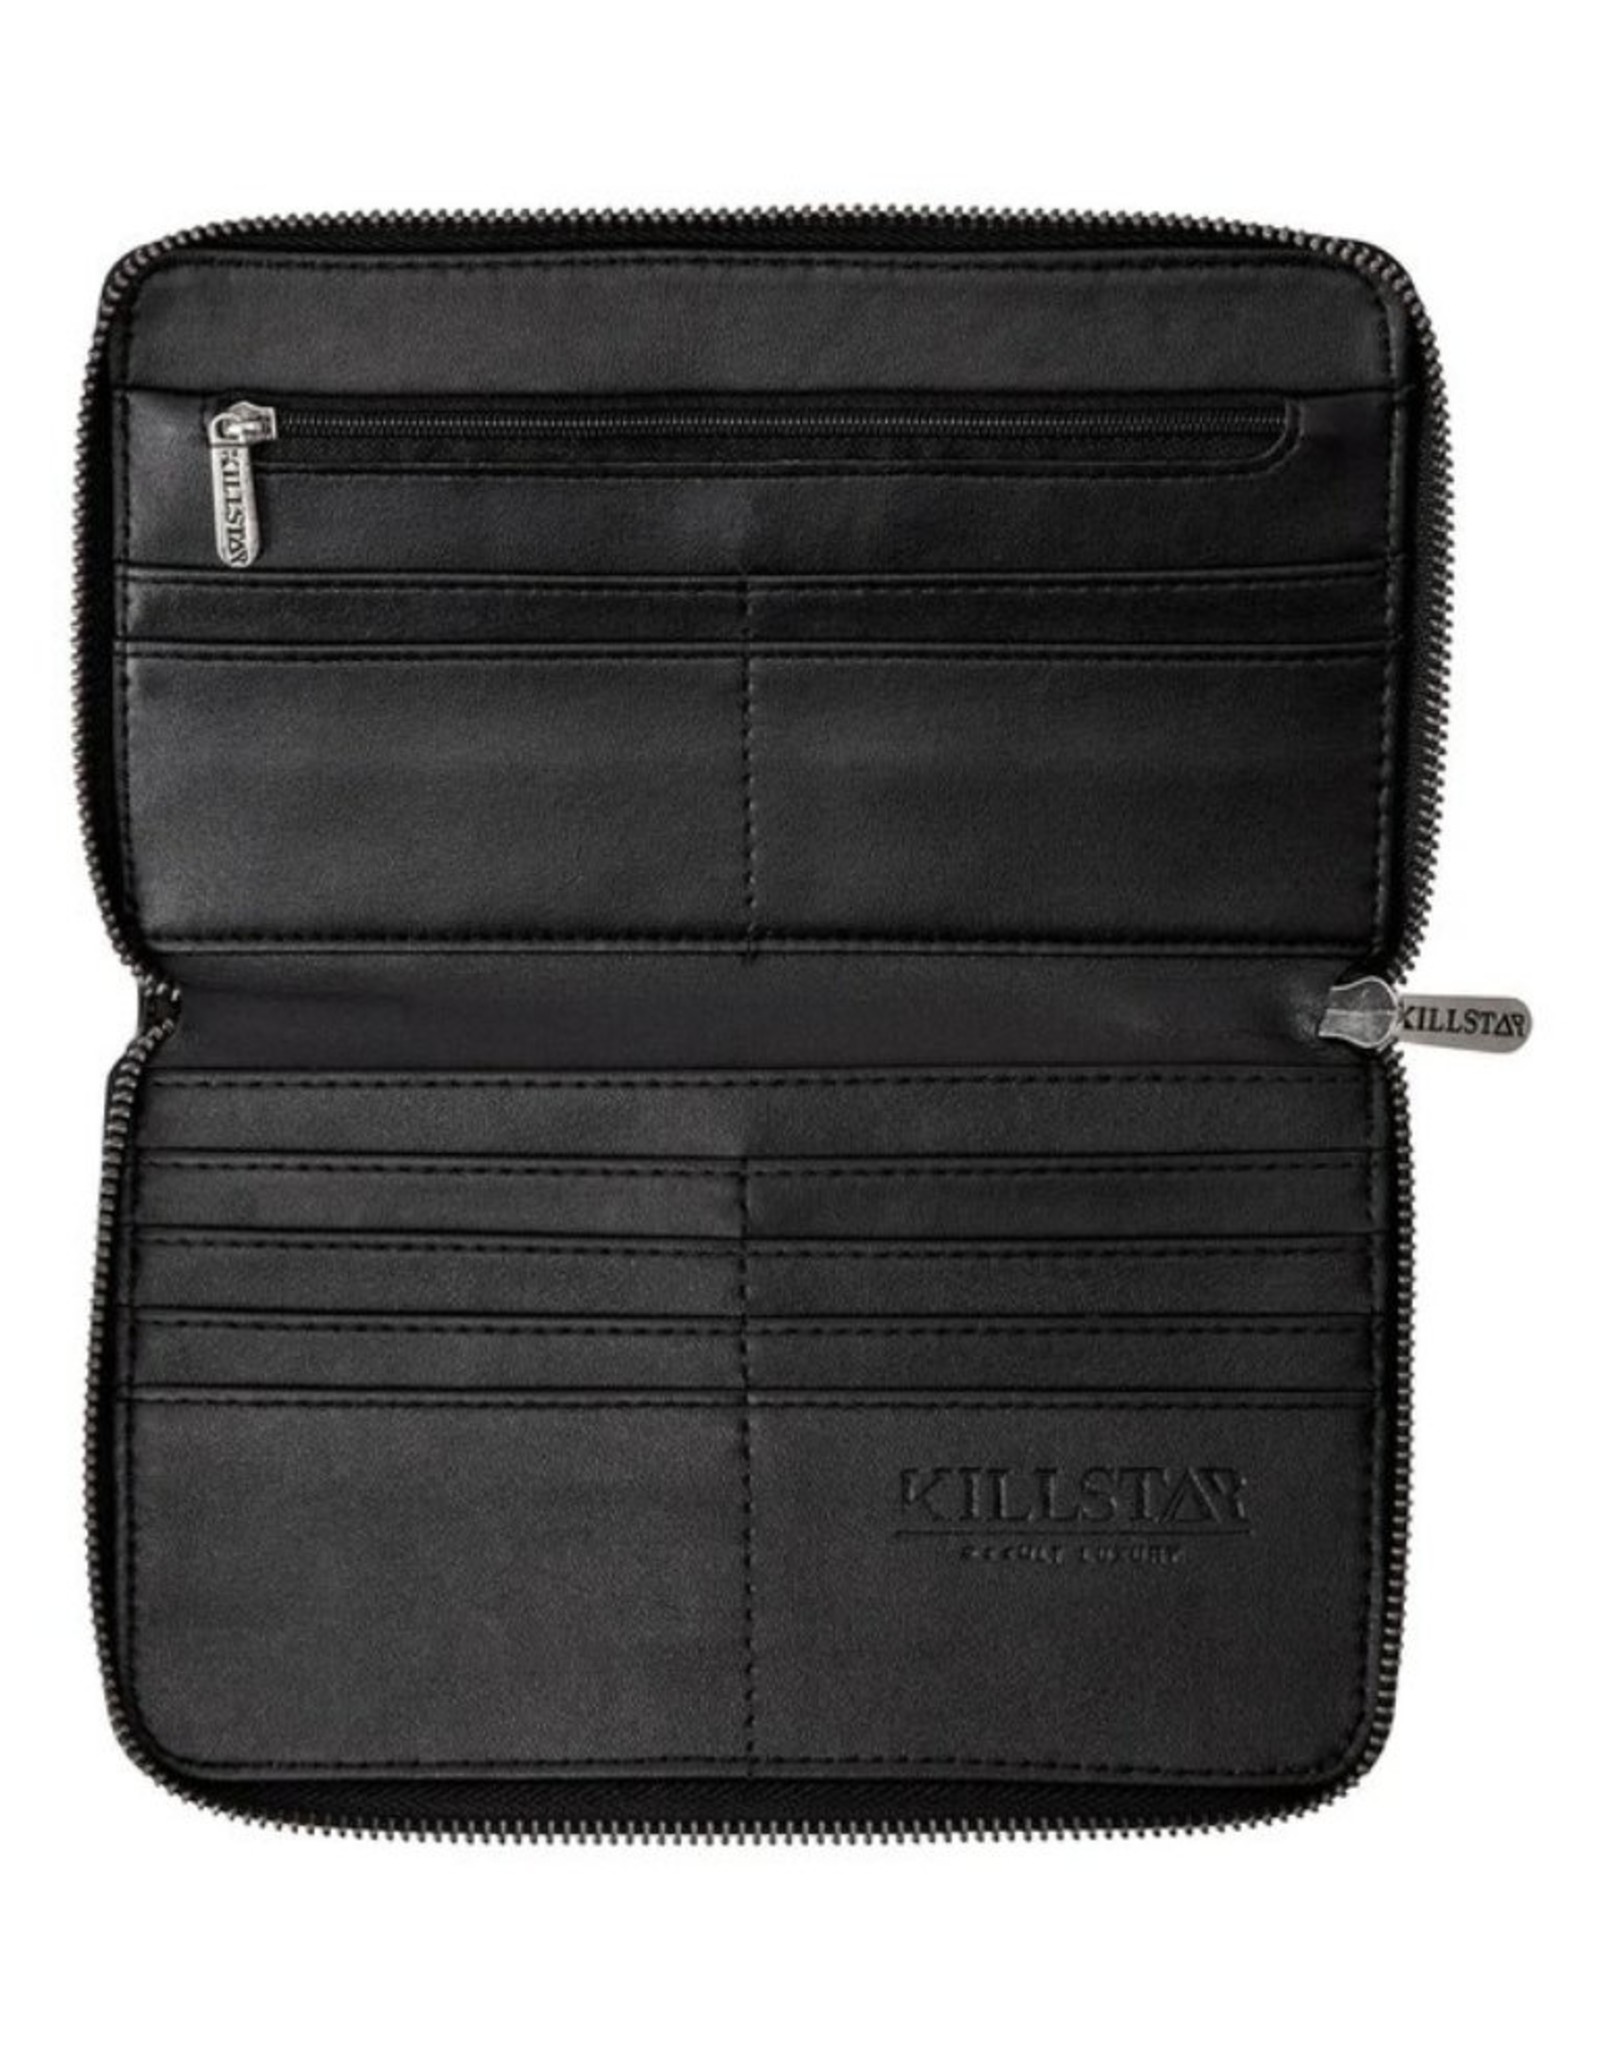 Killstar Killstar bags and accessiries - Killstar Night Queen wallet